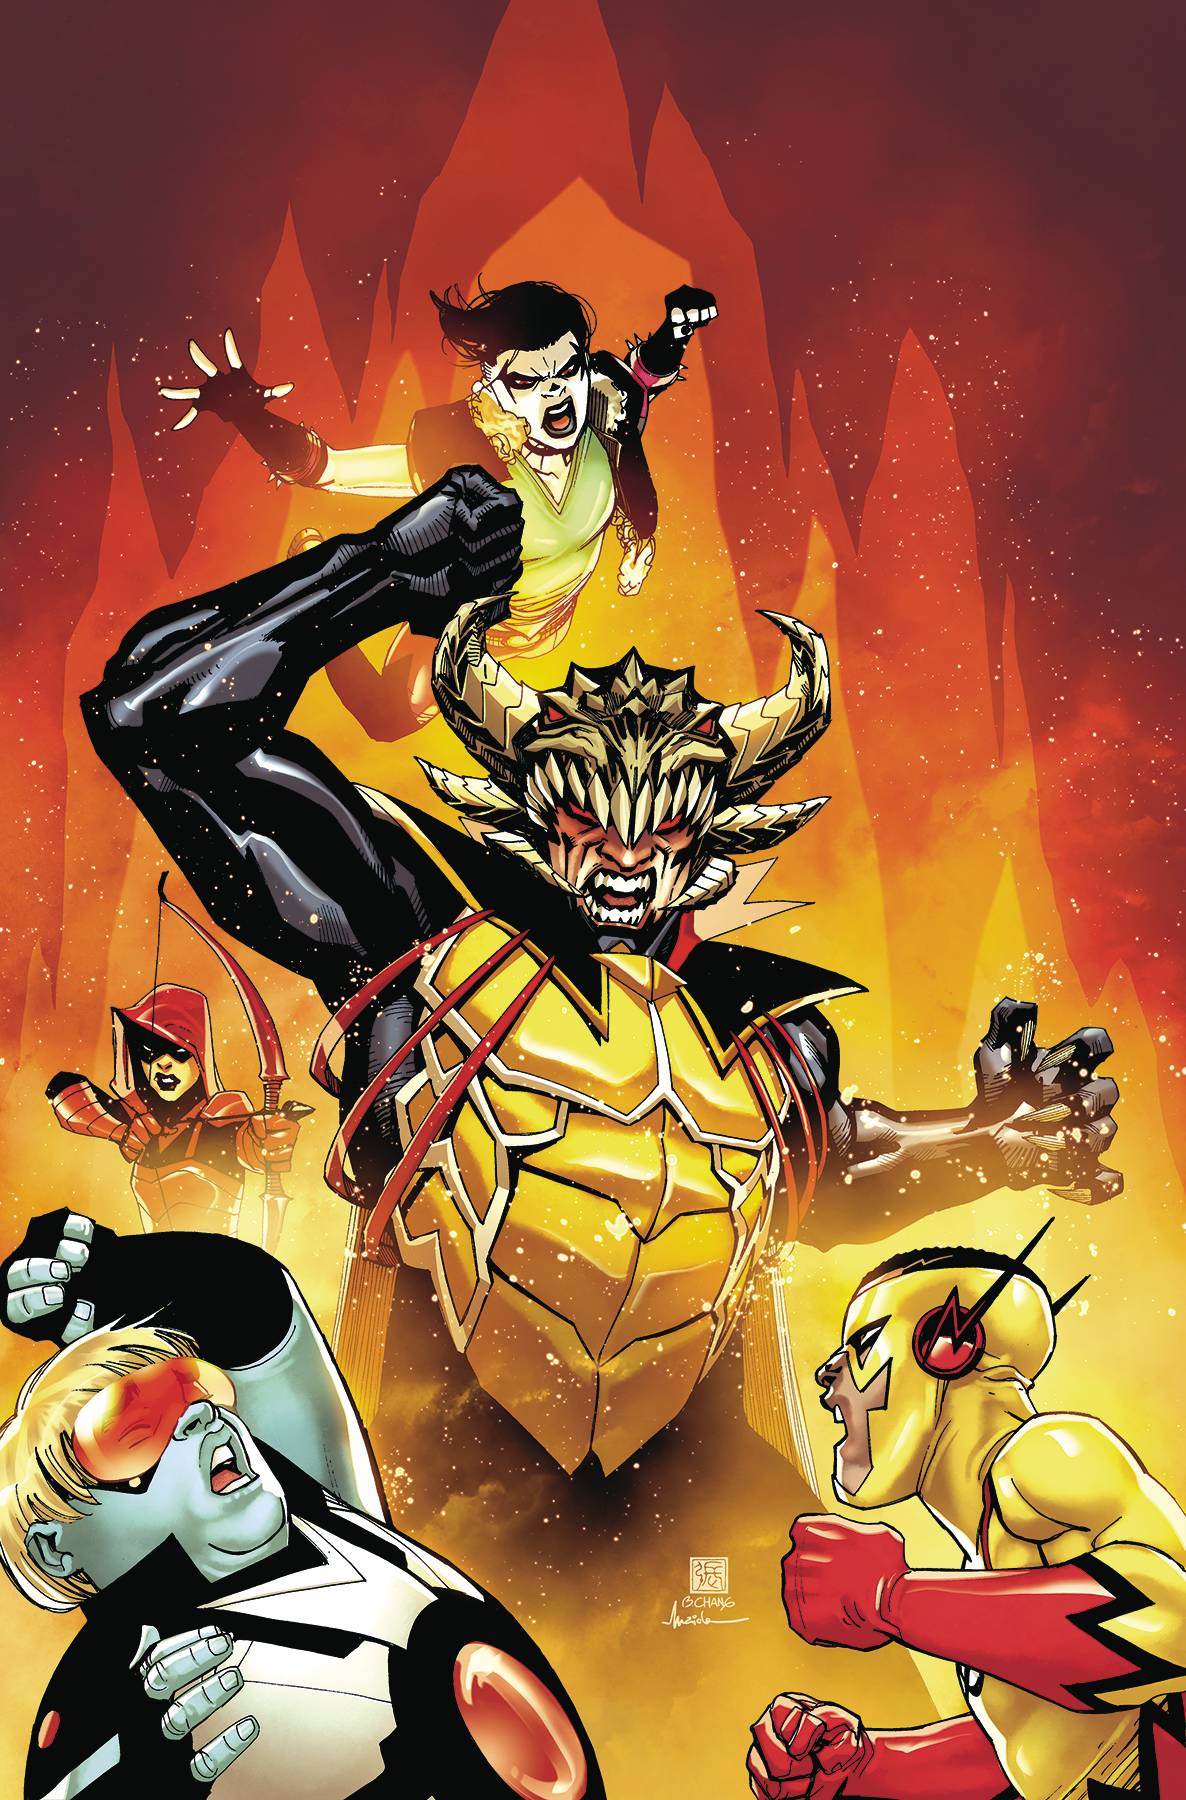 Teen Titans #42